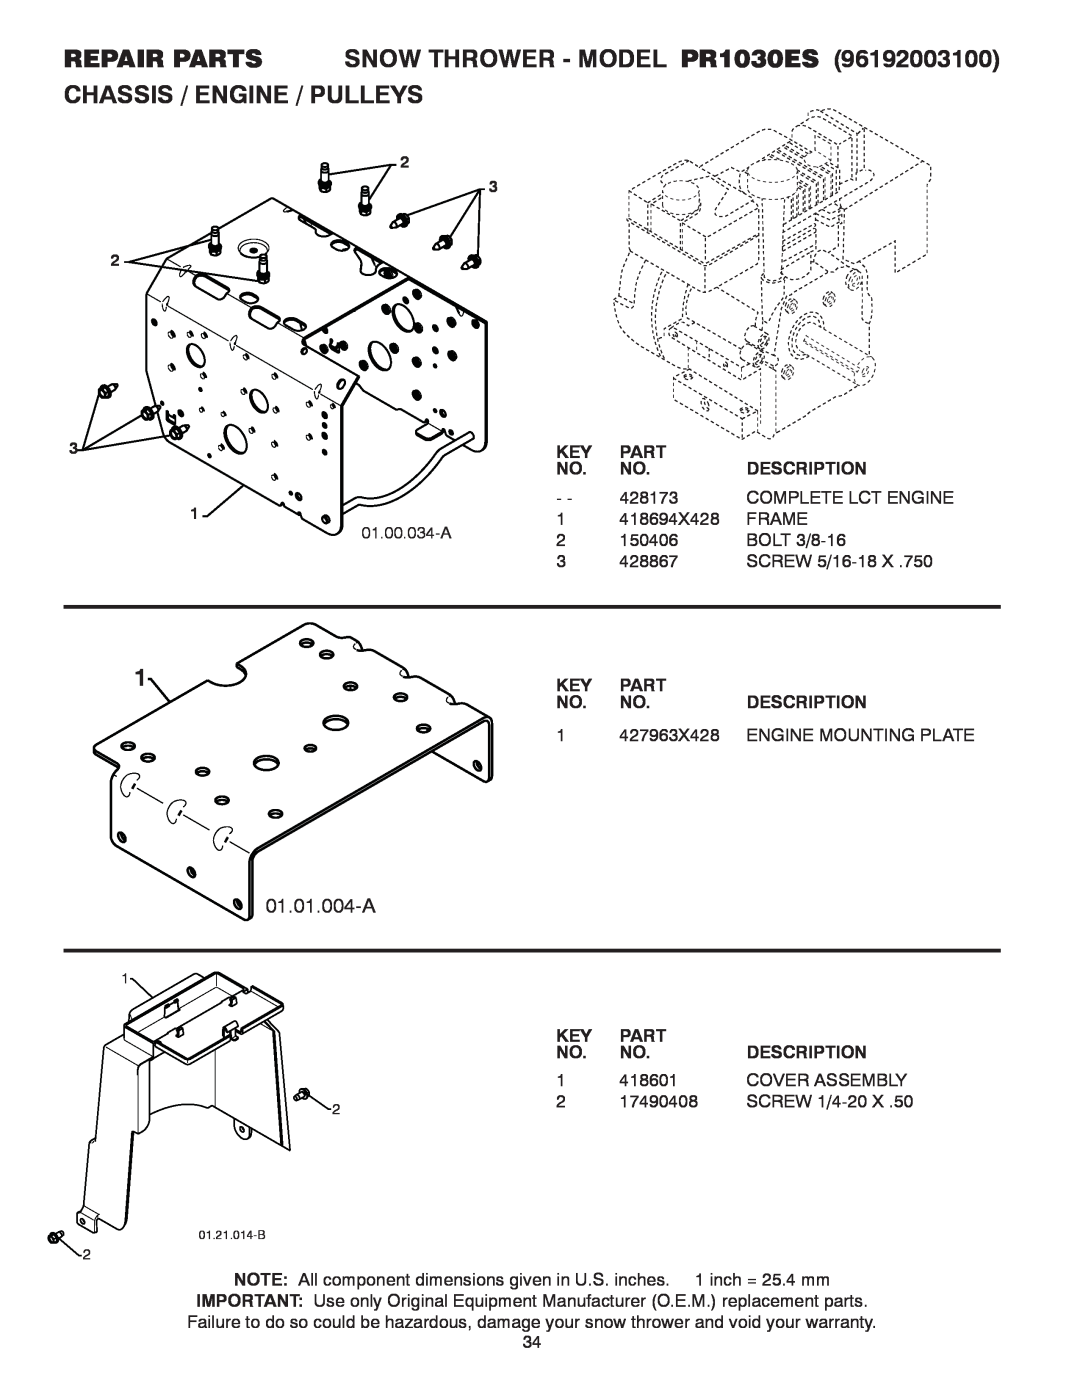 Poulan 428556 REPAIR PARTS SNOW THROWER - MODEL PR1030ES CHASSIS / ENGINE / PULLEYS, 01.01.004-A, Part, Description 